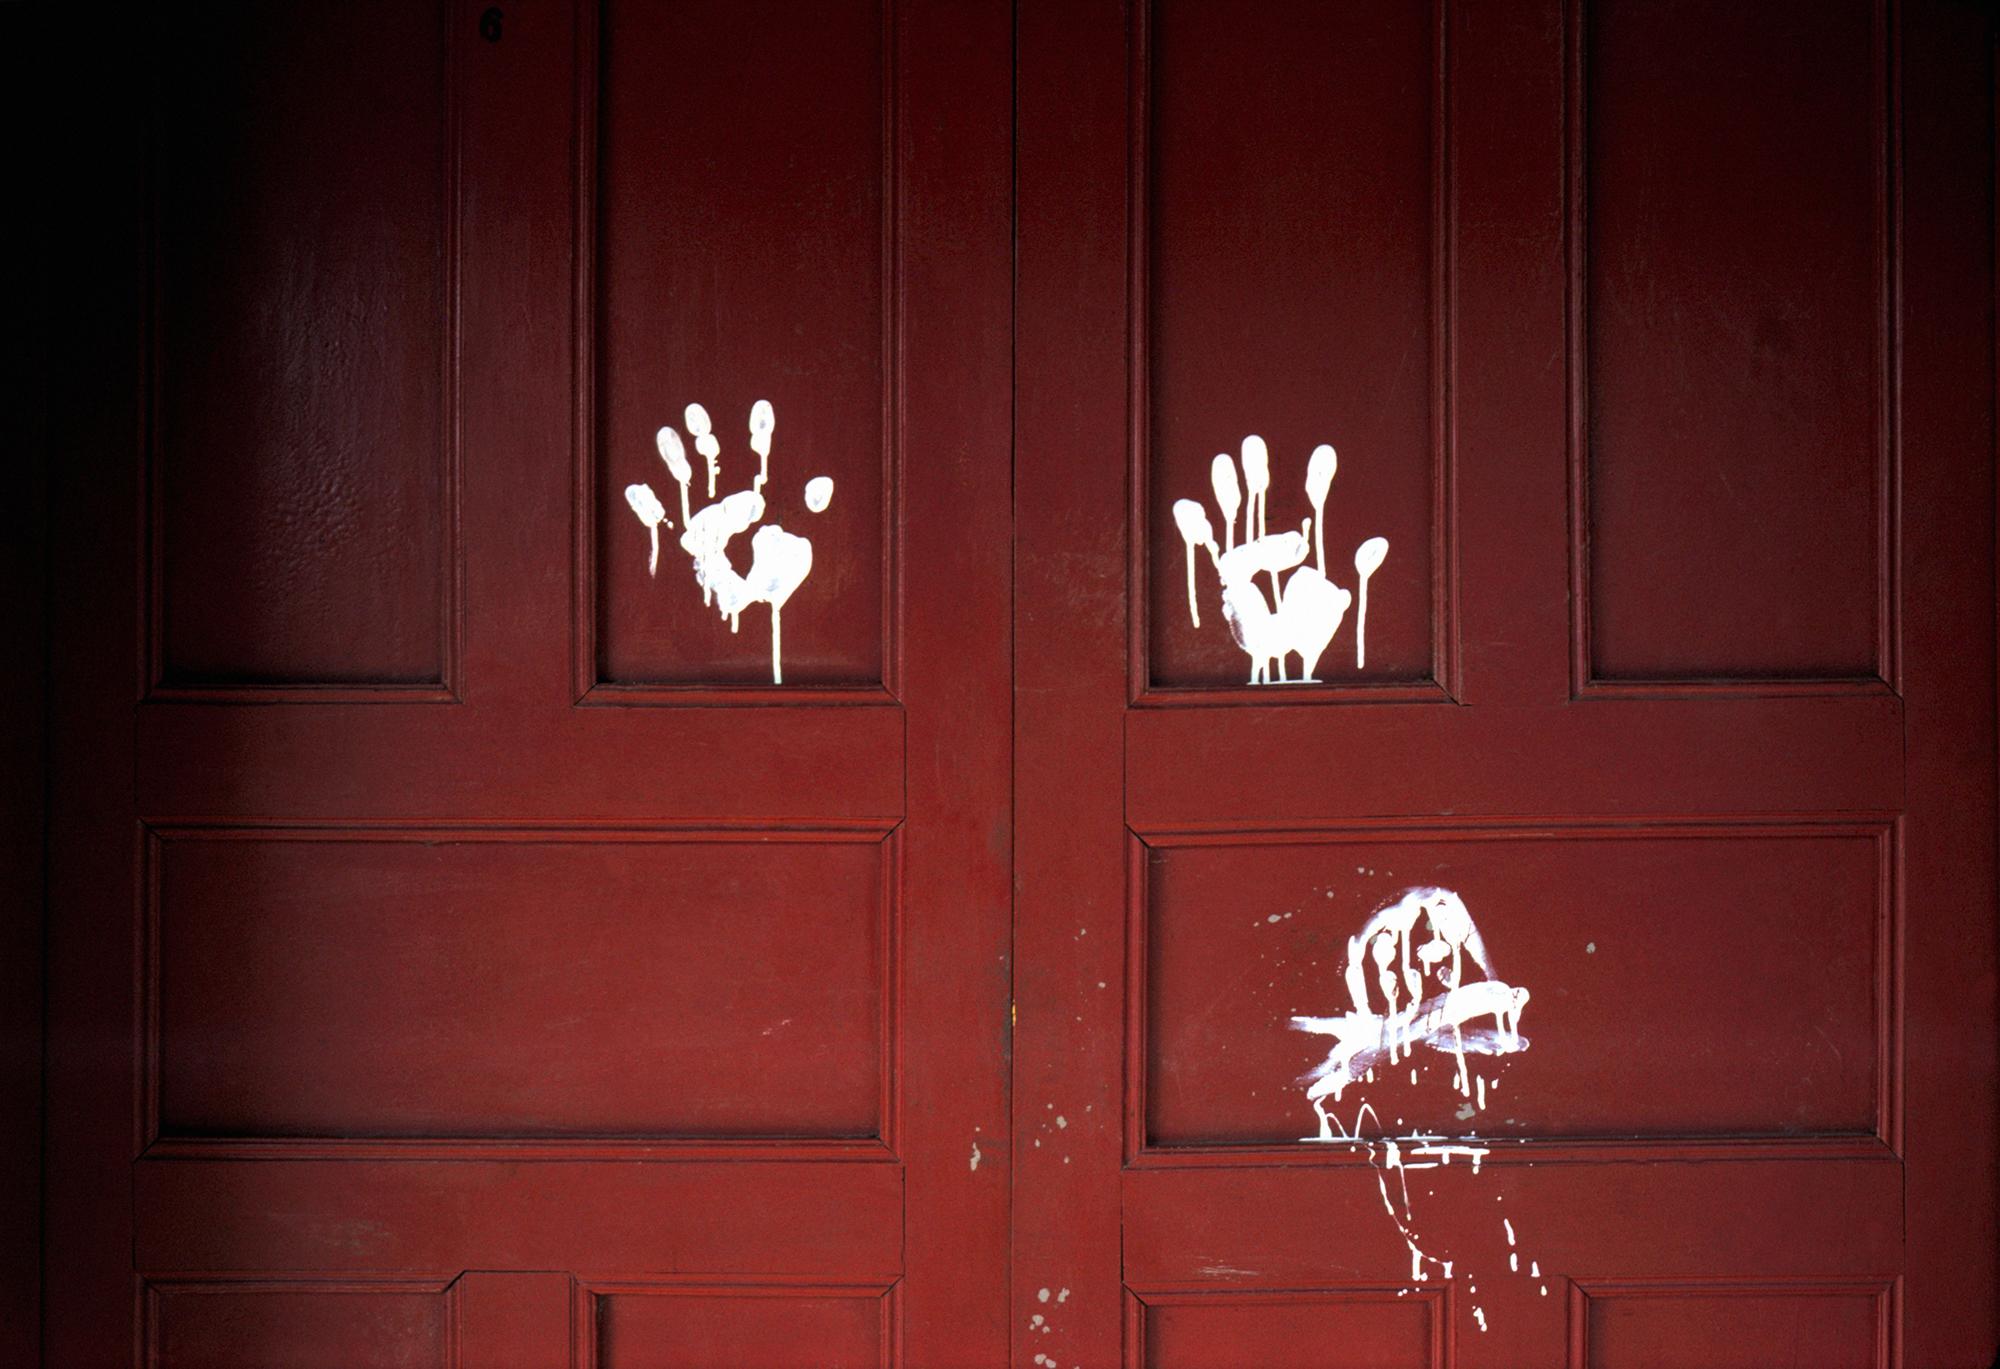 El Salvador. Arcatao, Chalatenango. 1979. “Mano blanca” firma de los escuadrones de la muerte dejada en la puerta de la casa de una de sus víctimas. ©Susan Meiselas/Magnum Photos